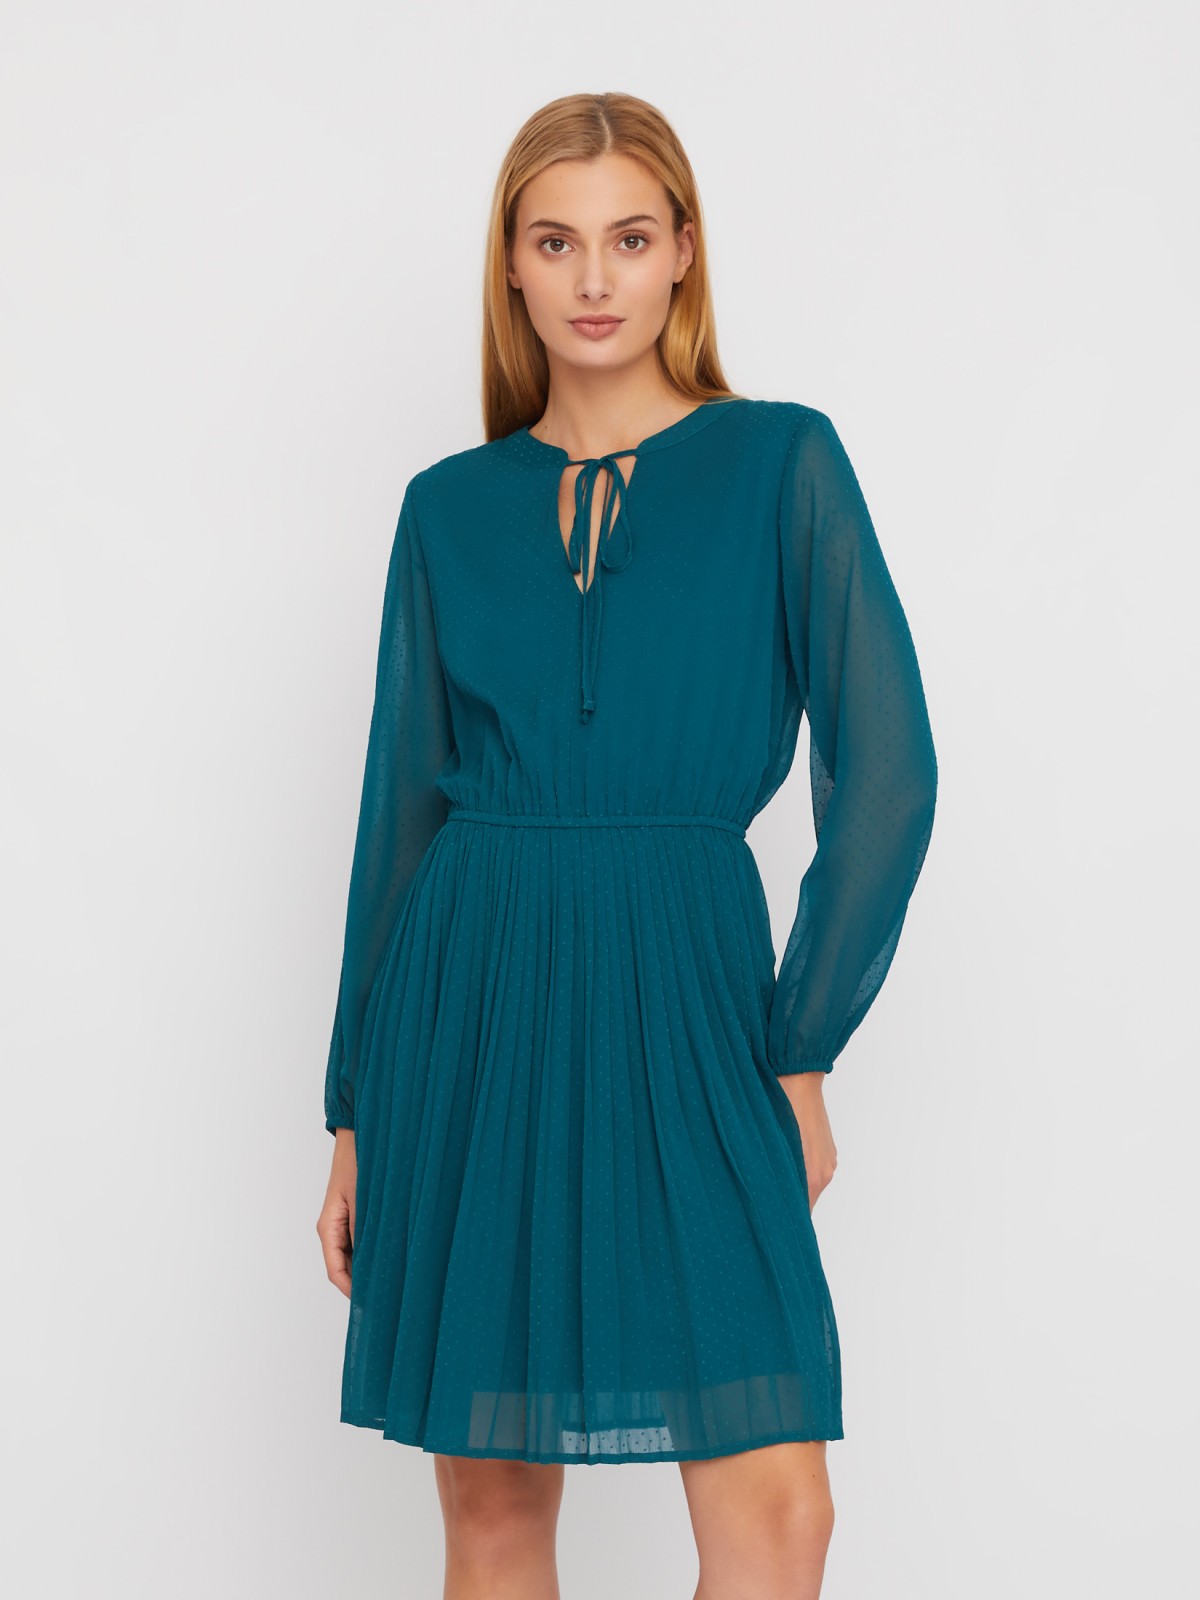 Шифоновое платье в горошек с плиссировкой zolla 02411824Y153, цвет темно-бирюзовый, размер XS - фото 1